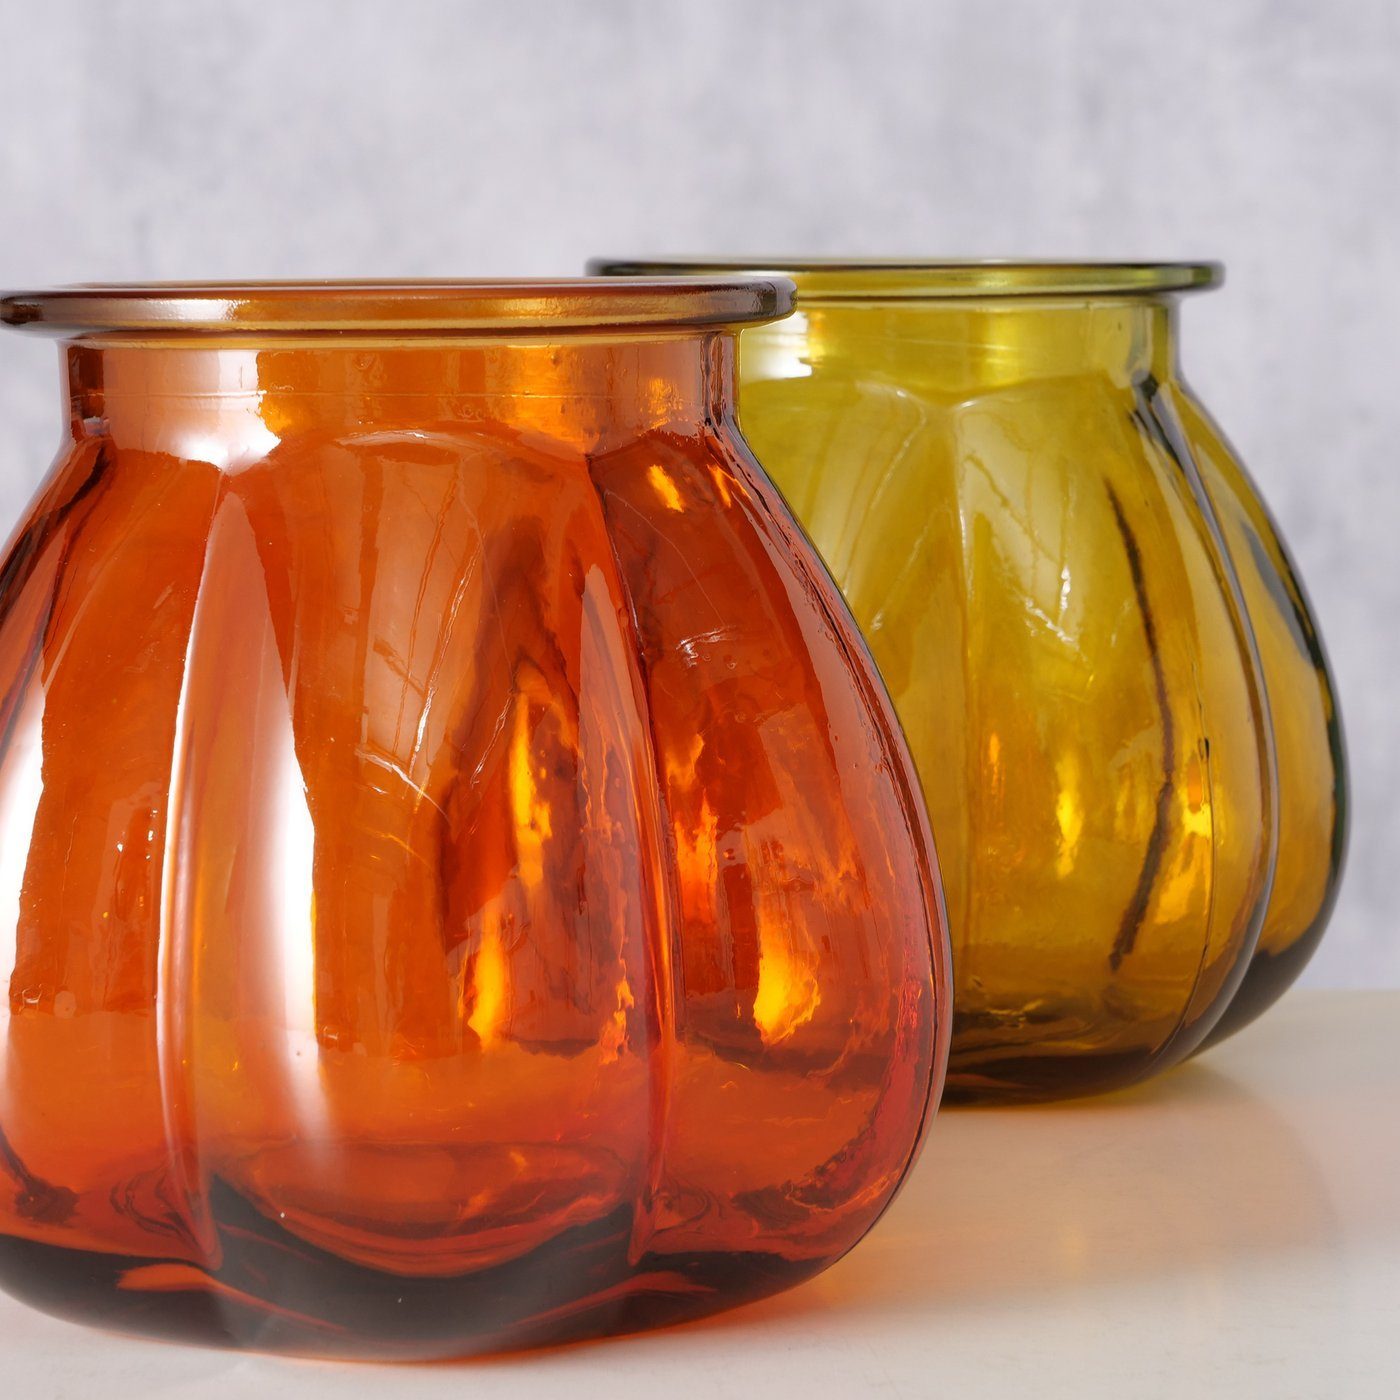 BOLTZE Dekovase 2er Set "Tangerine" aus Glas in gelb/orange, Vase Blumenvase